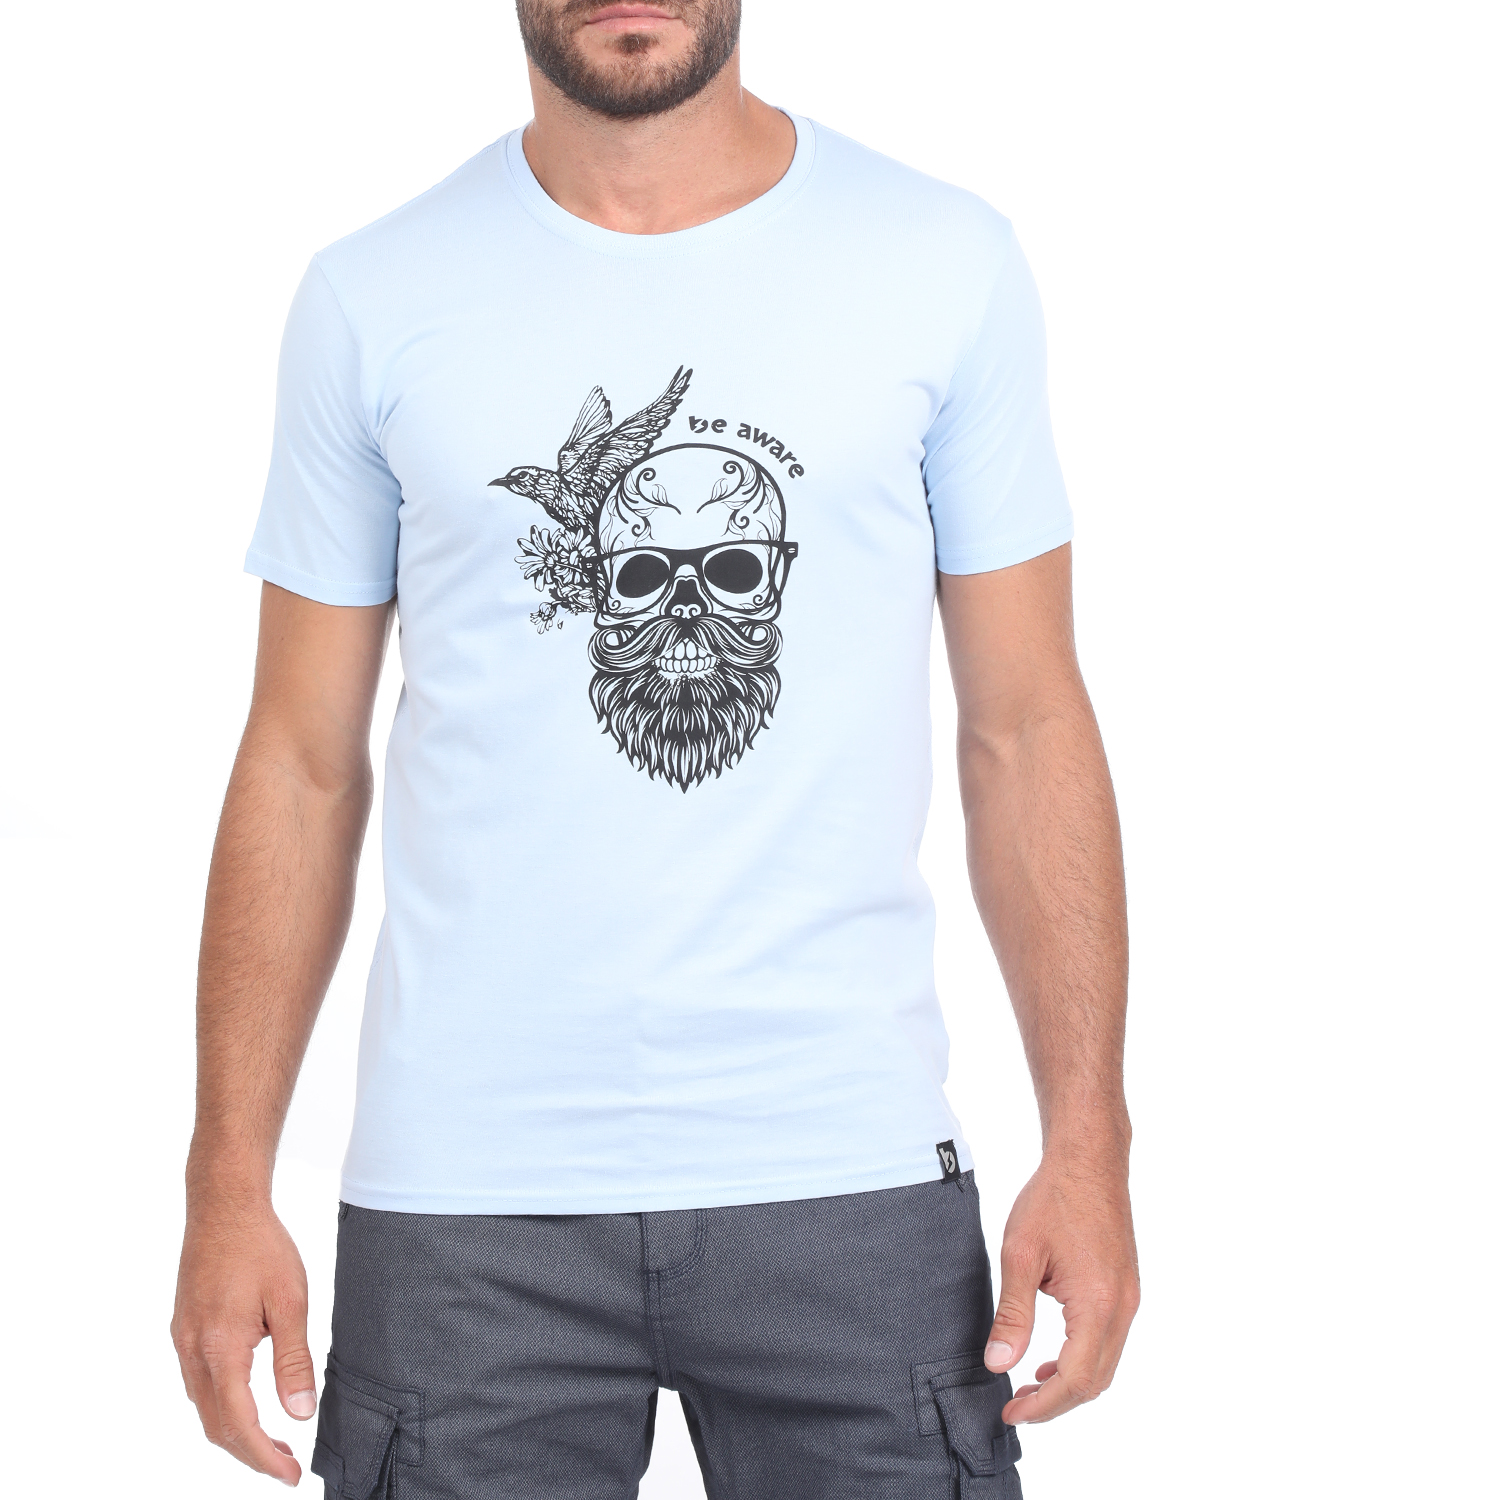 Ανδρικά/Ρούχα/Μπλούζες/Κοντομάνικες BATTERY - Ανδρικό t-shirt BATTERY SINGLE μπλε